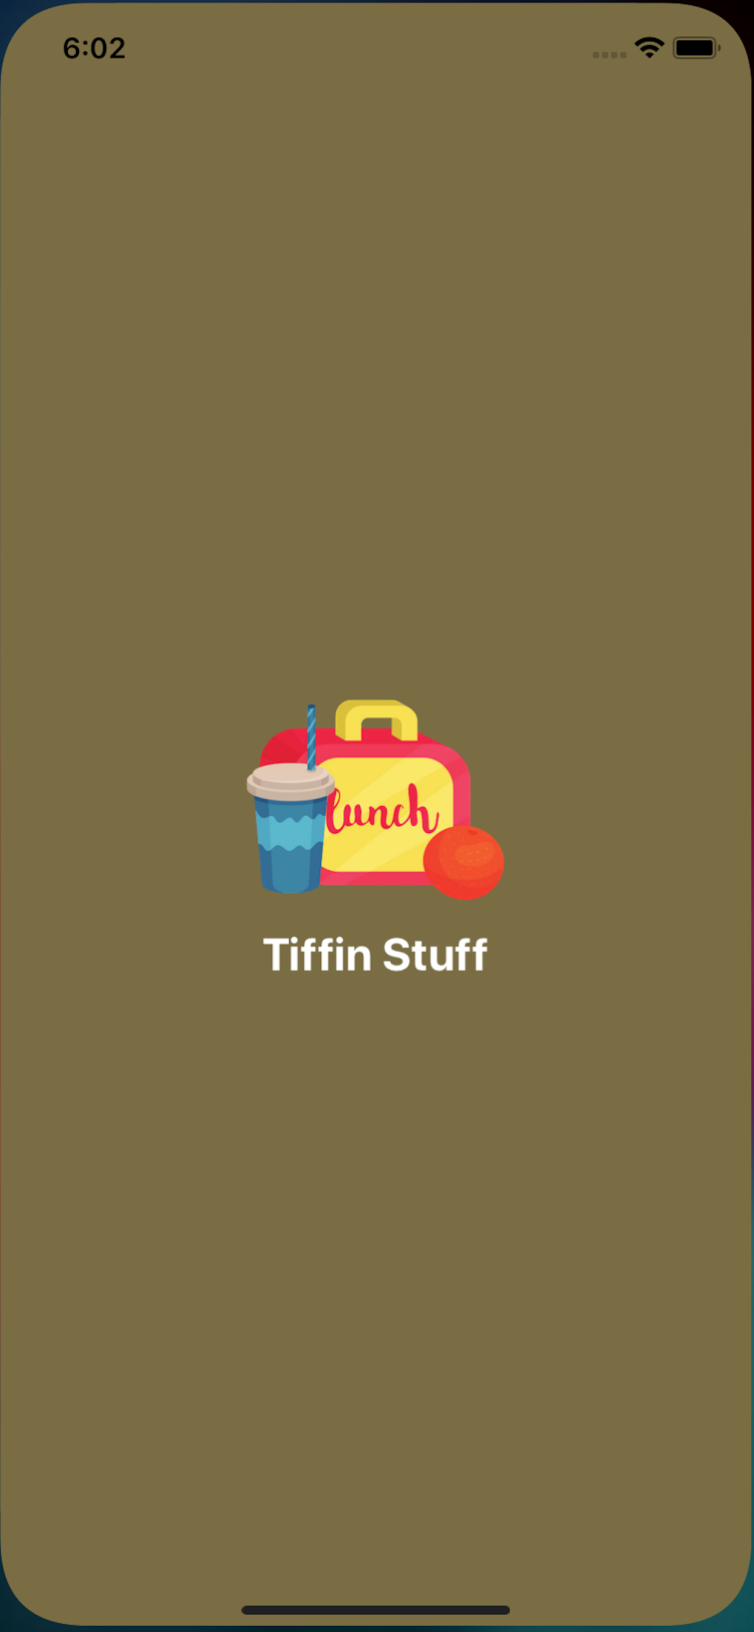 Tiffin Stuff Application (2)